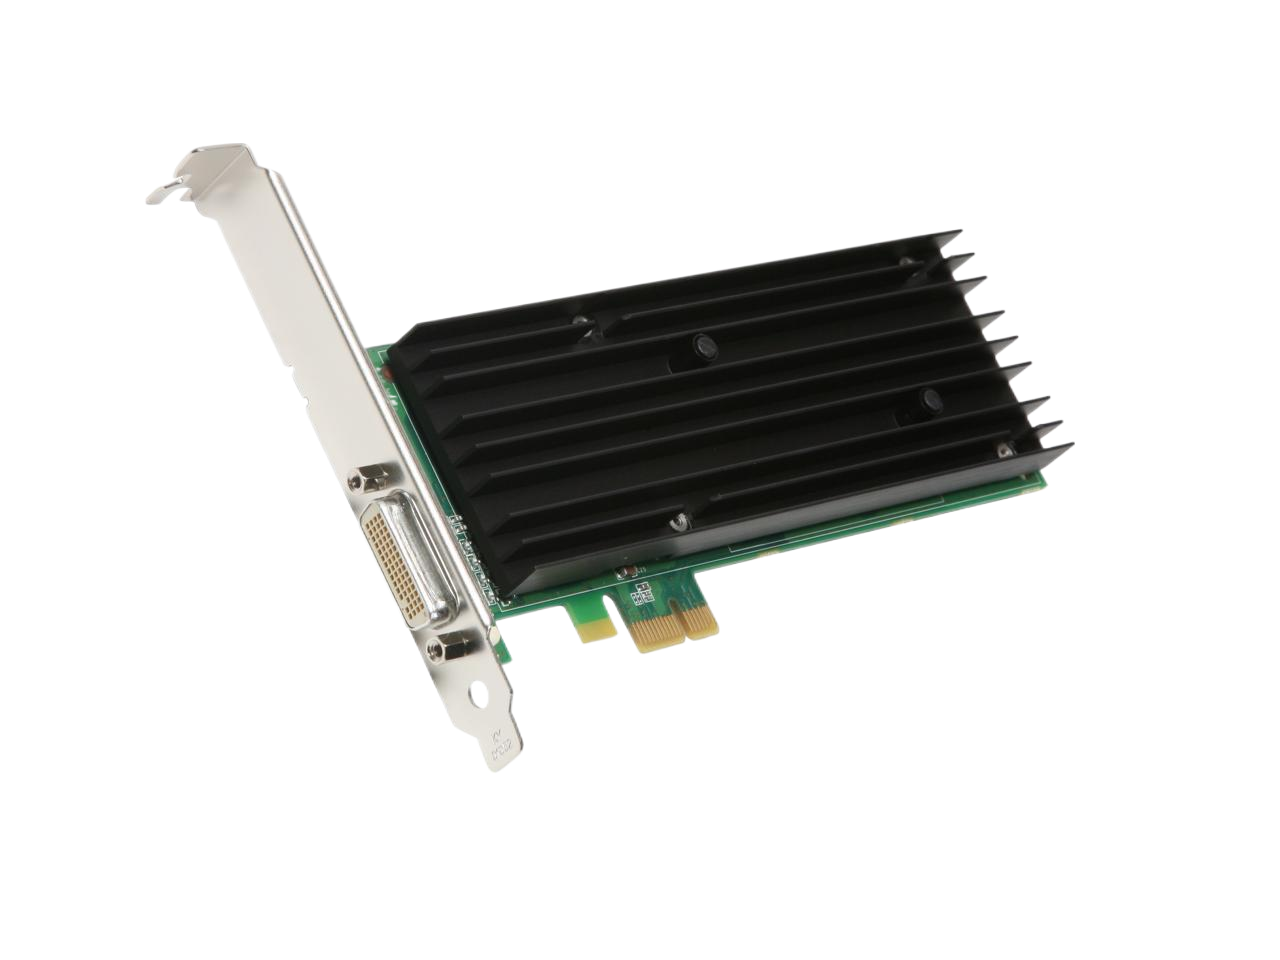 PNY Quadro NVS 290 256MB 64-bit GDDR2 PCI Express x1 Low Profile Workstation Video Card VCQ290NVS-PCIEX1-PB